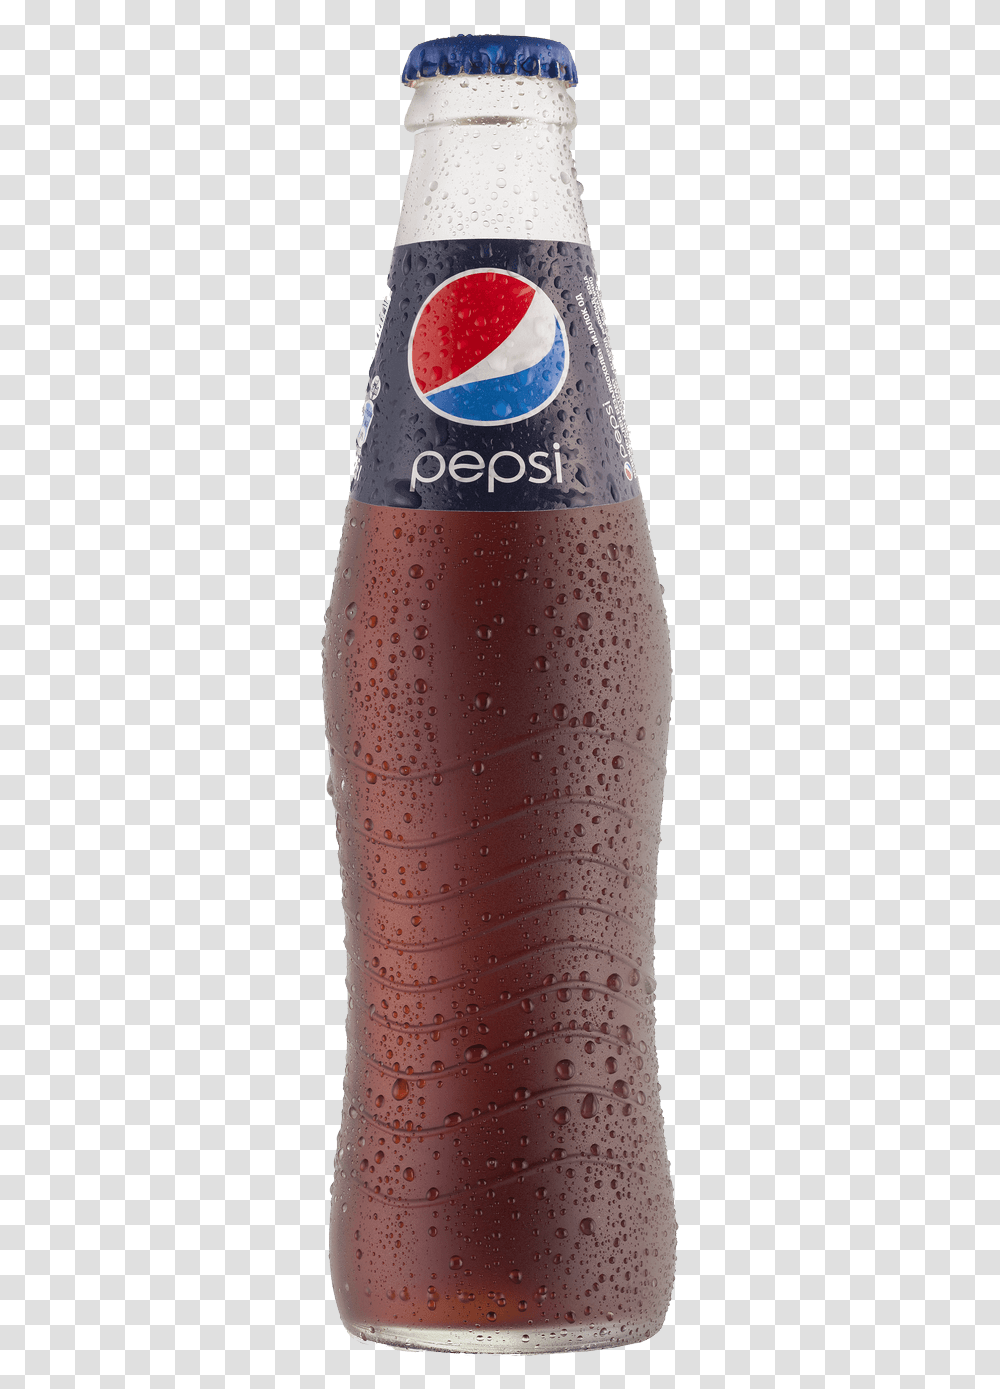 Glass Bottle Pepsi Clip Arts Regular Cold Drinks, Soda, Beverage, Plant, Coke Transparent Png